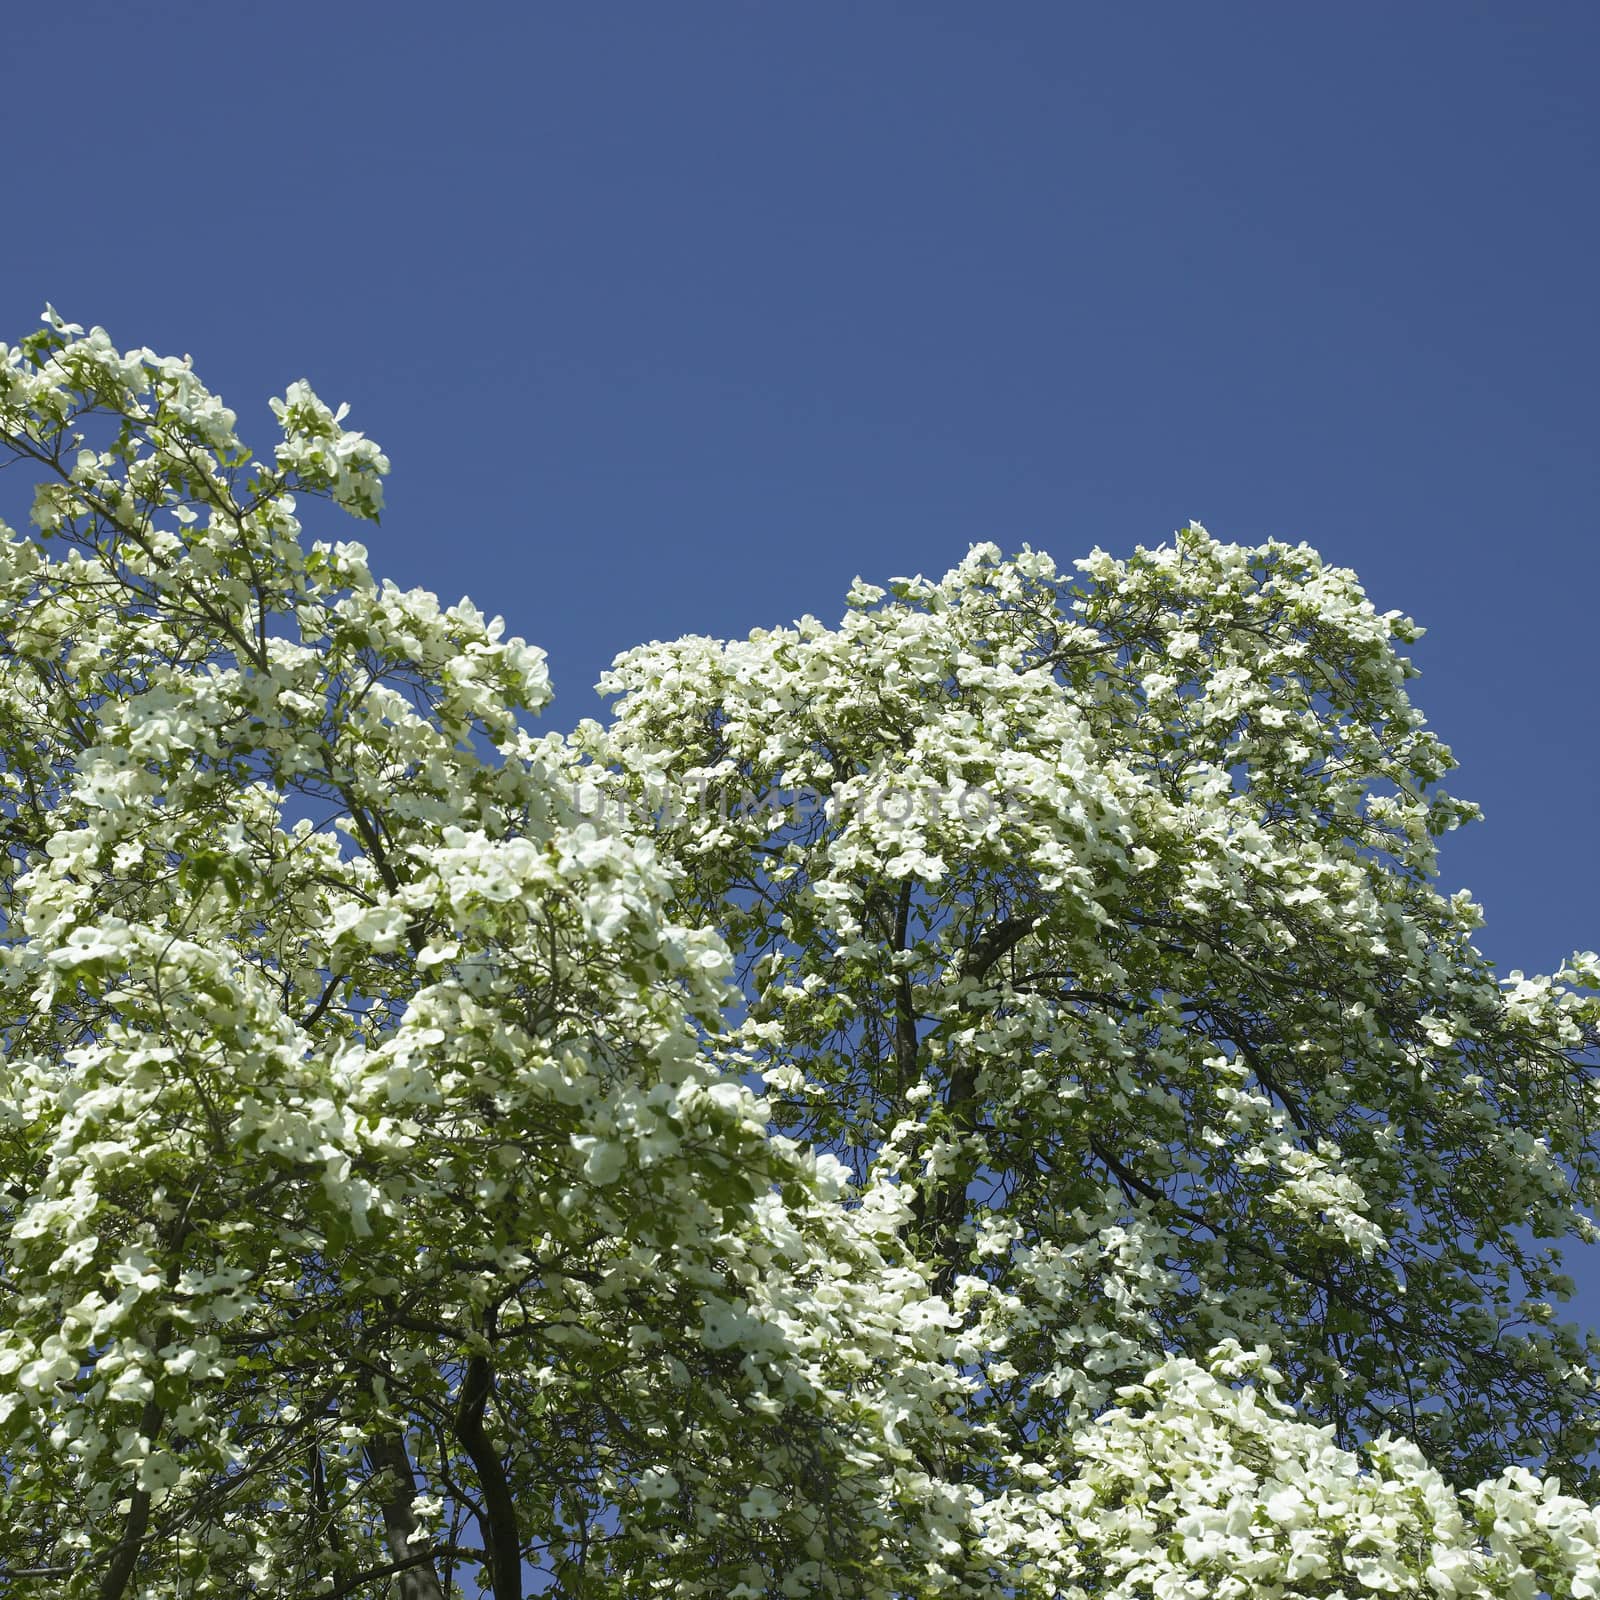 Dogwood tree in bloom by mmm